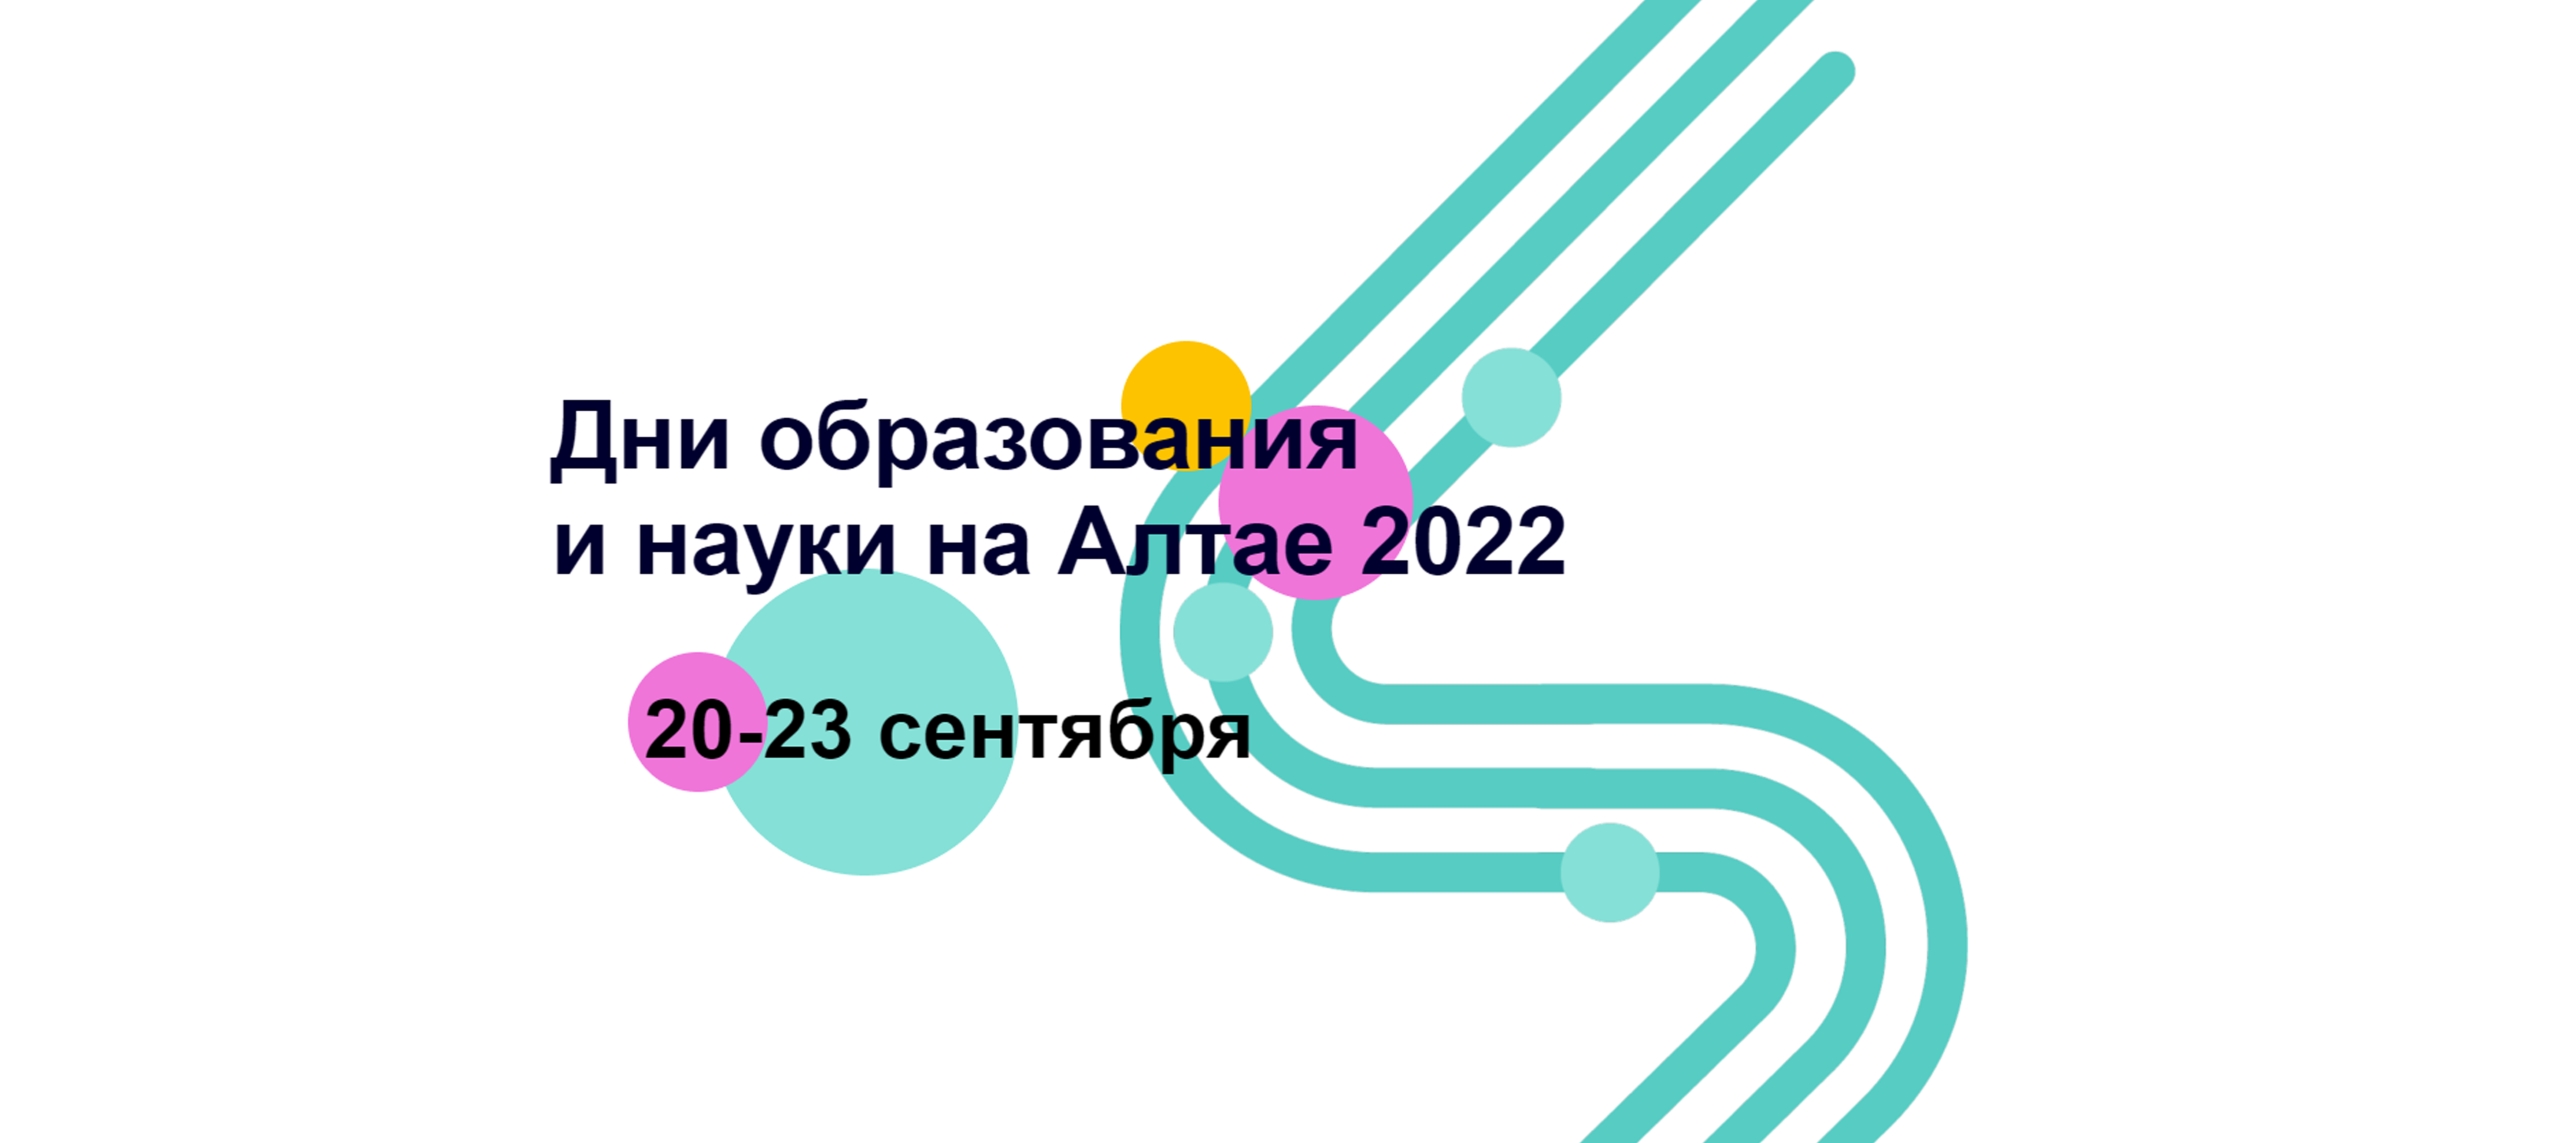 Дни образования и науки на Алтае сентябрь 2022